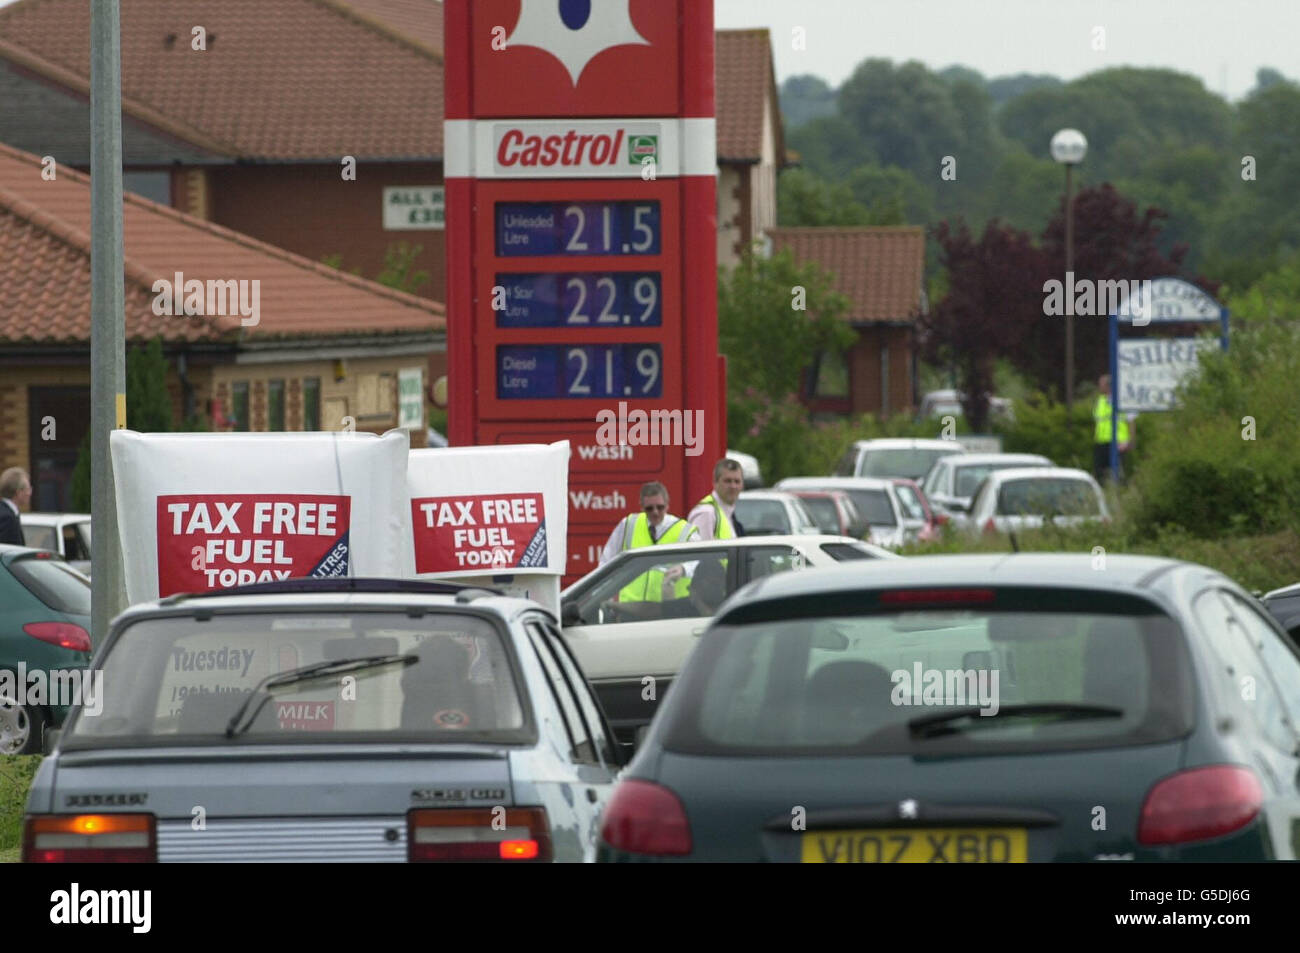 Warteschlangen für steuerfreien Kraftstoff an einer Murco-Tankstelle in Deanshanger in der Nähe von Milton Keynes, Buckinghamshire, die Teil einer Aktion ist, die das Unternehmen ausgibt, um zu zeigen, wie viel Steuern die Autofahrer kosten. Stockfoto